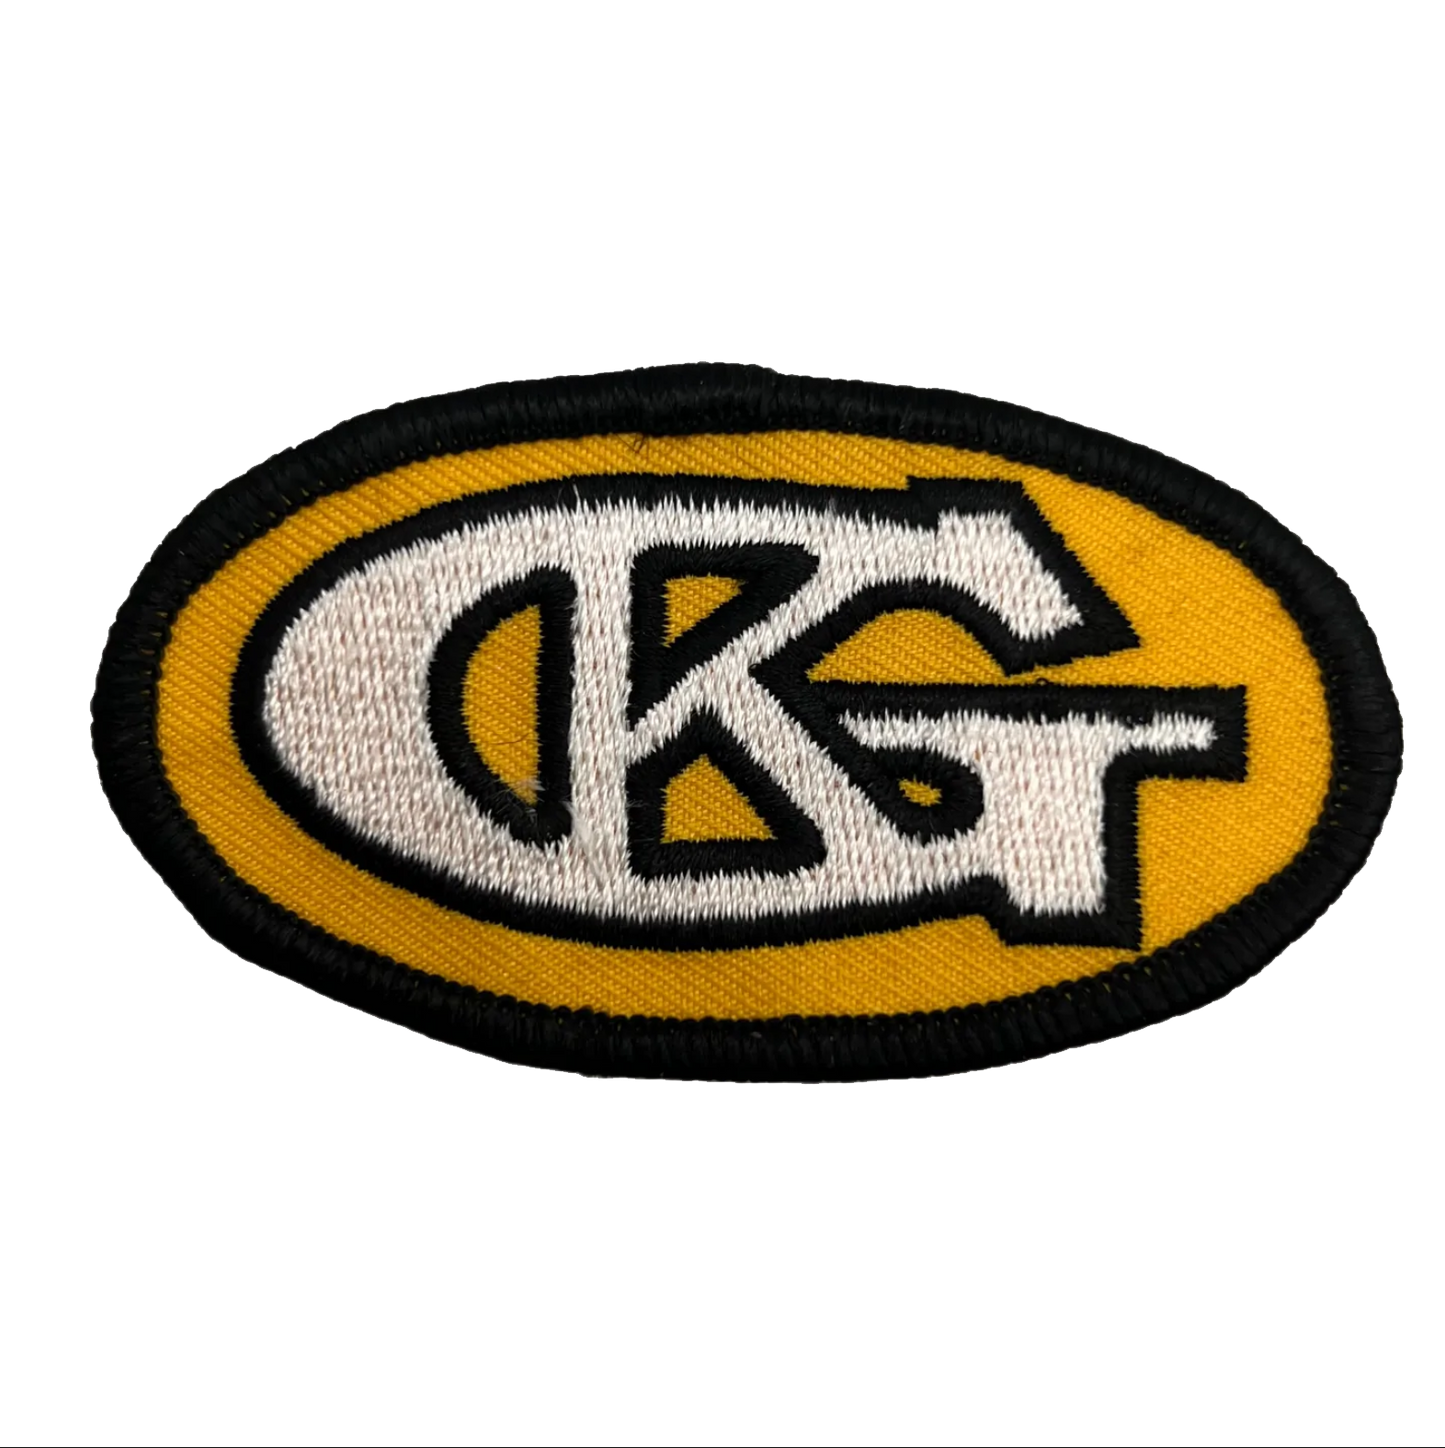 Grind King "GK" 90's Logo Patch